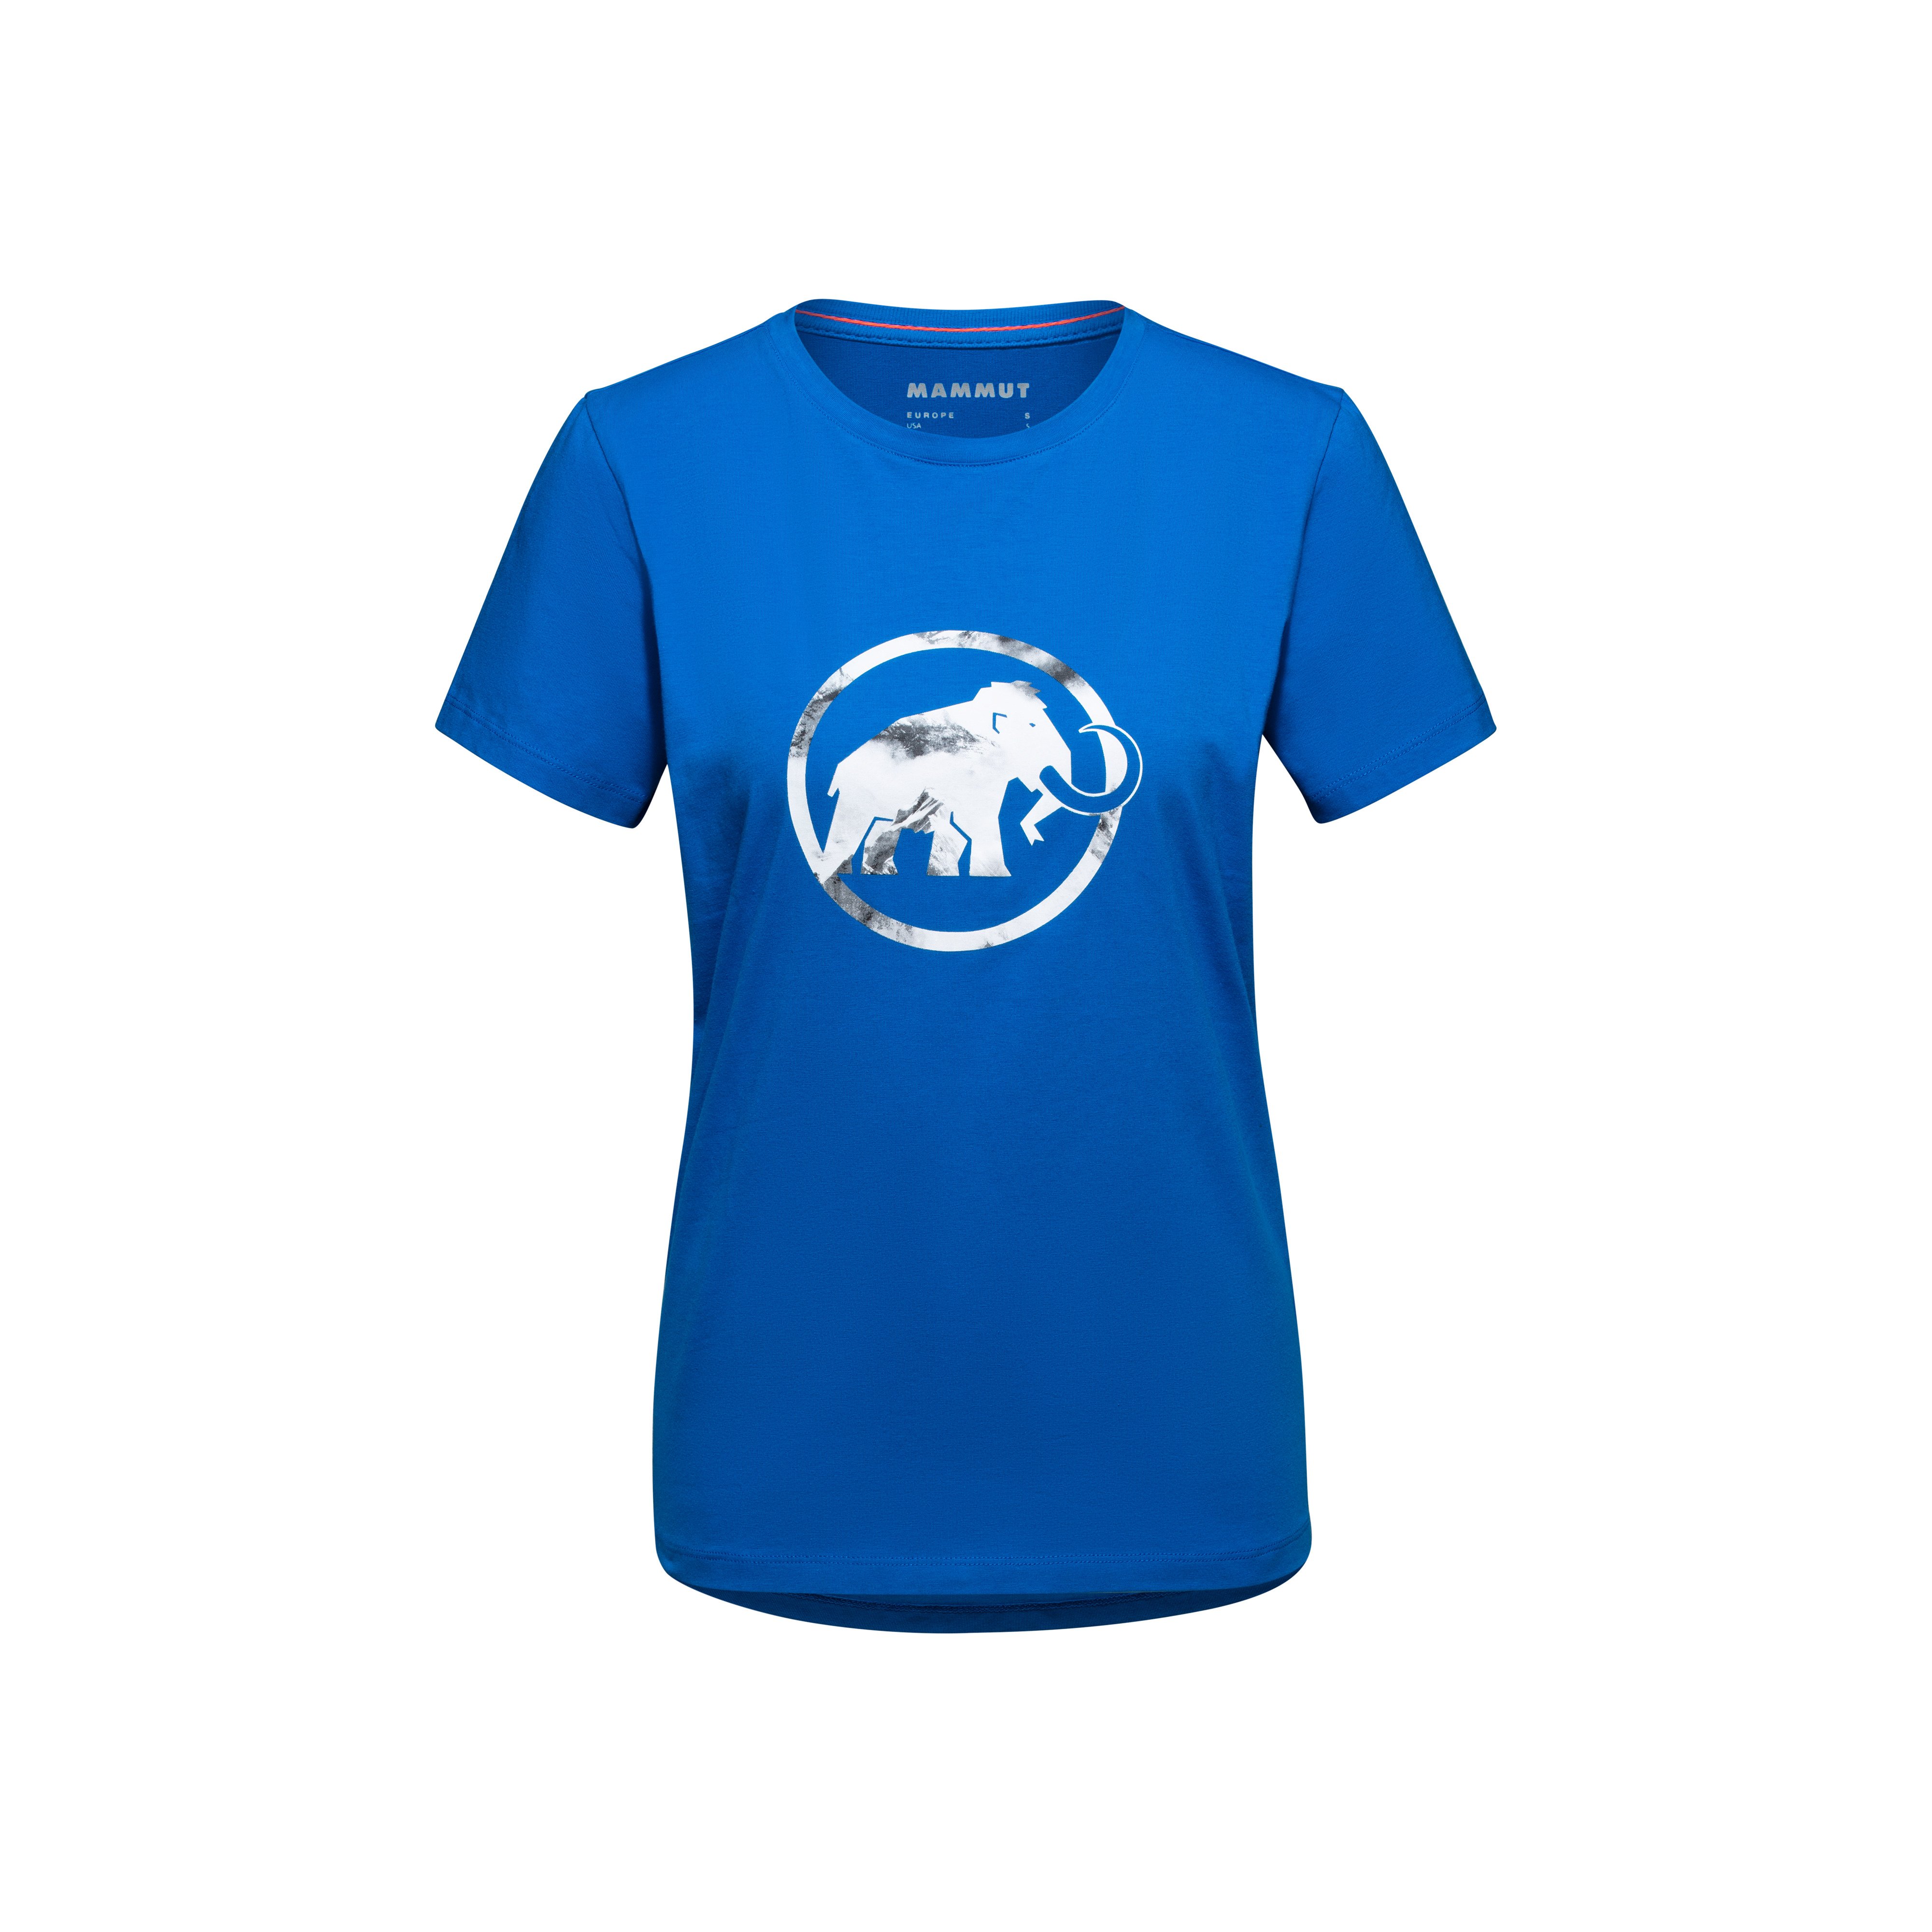 Mammut Graphic T-Shirt Women - ice, XS thumbnail